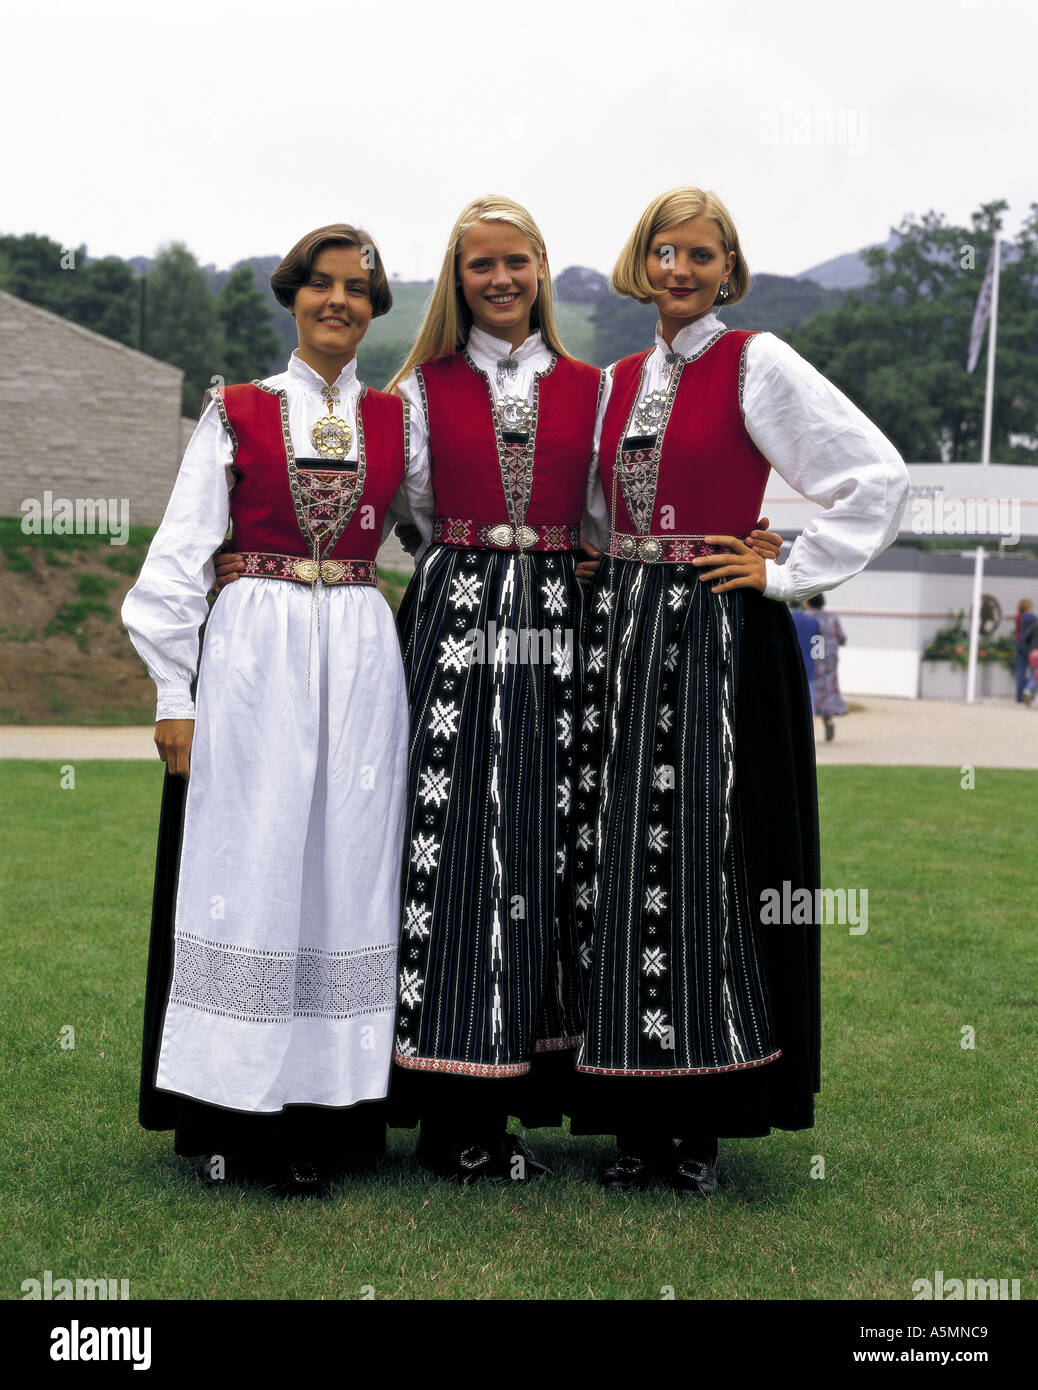 Norwegian women in national costume Stock Photo